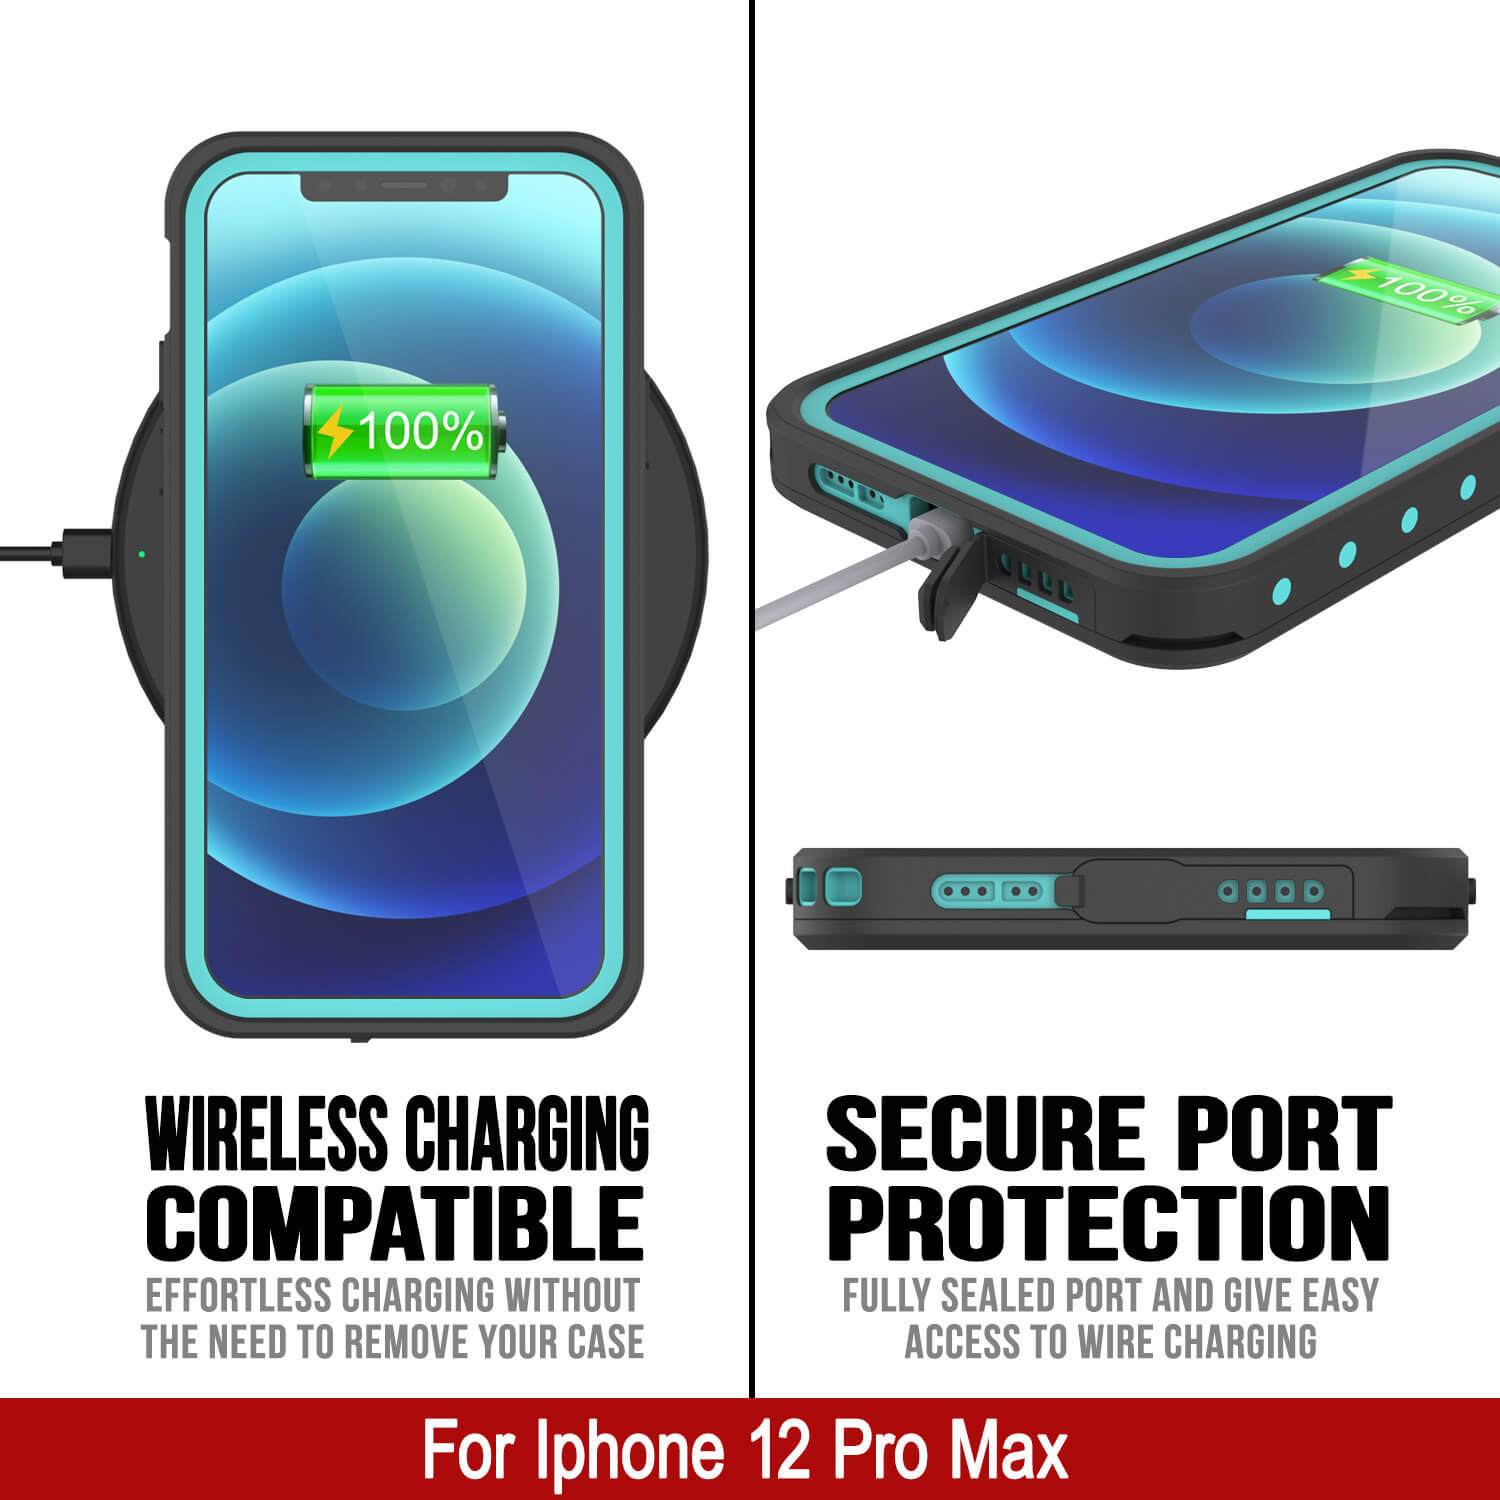 iPhone 12 Pro Max Waterproof IP68 Case, Punkcase [Teal] [StudStar Series] [Slim Fit]